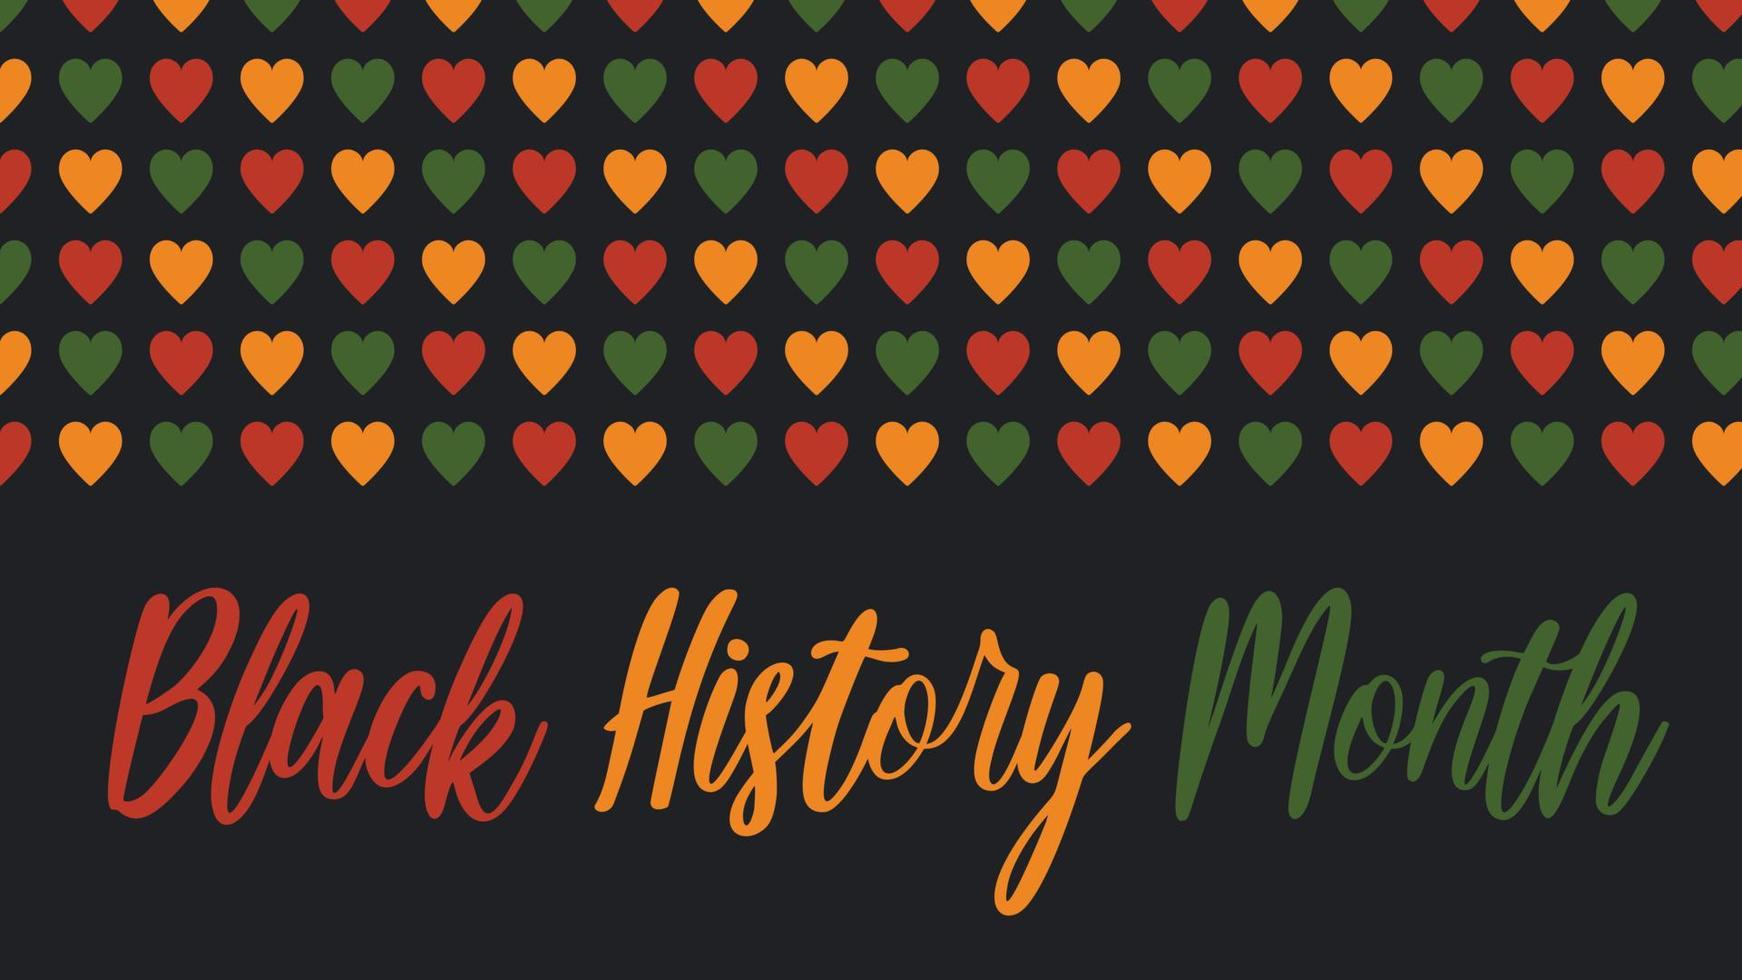 vector banner mês da história negra - celebração nos eua, logotipo do mês americano africano. padrão com corações em cores africanas - vermelho, verde, amarelo sobre fundo preto